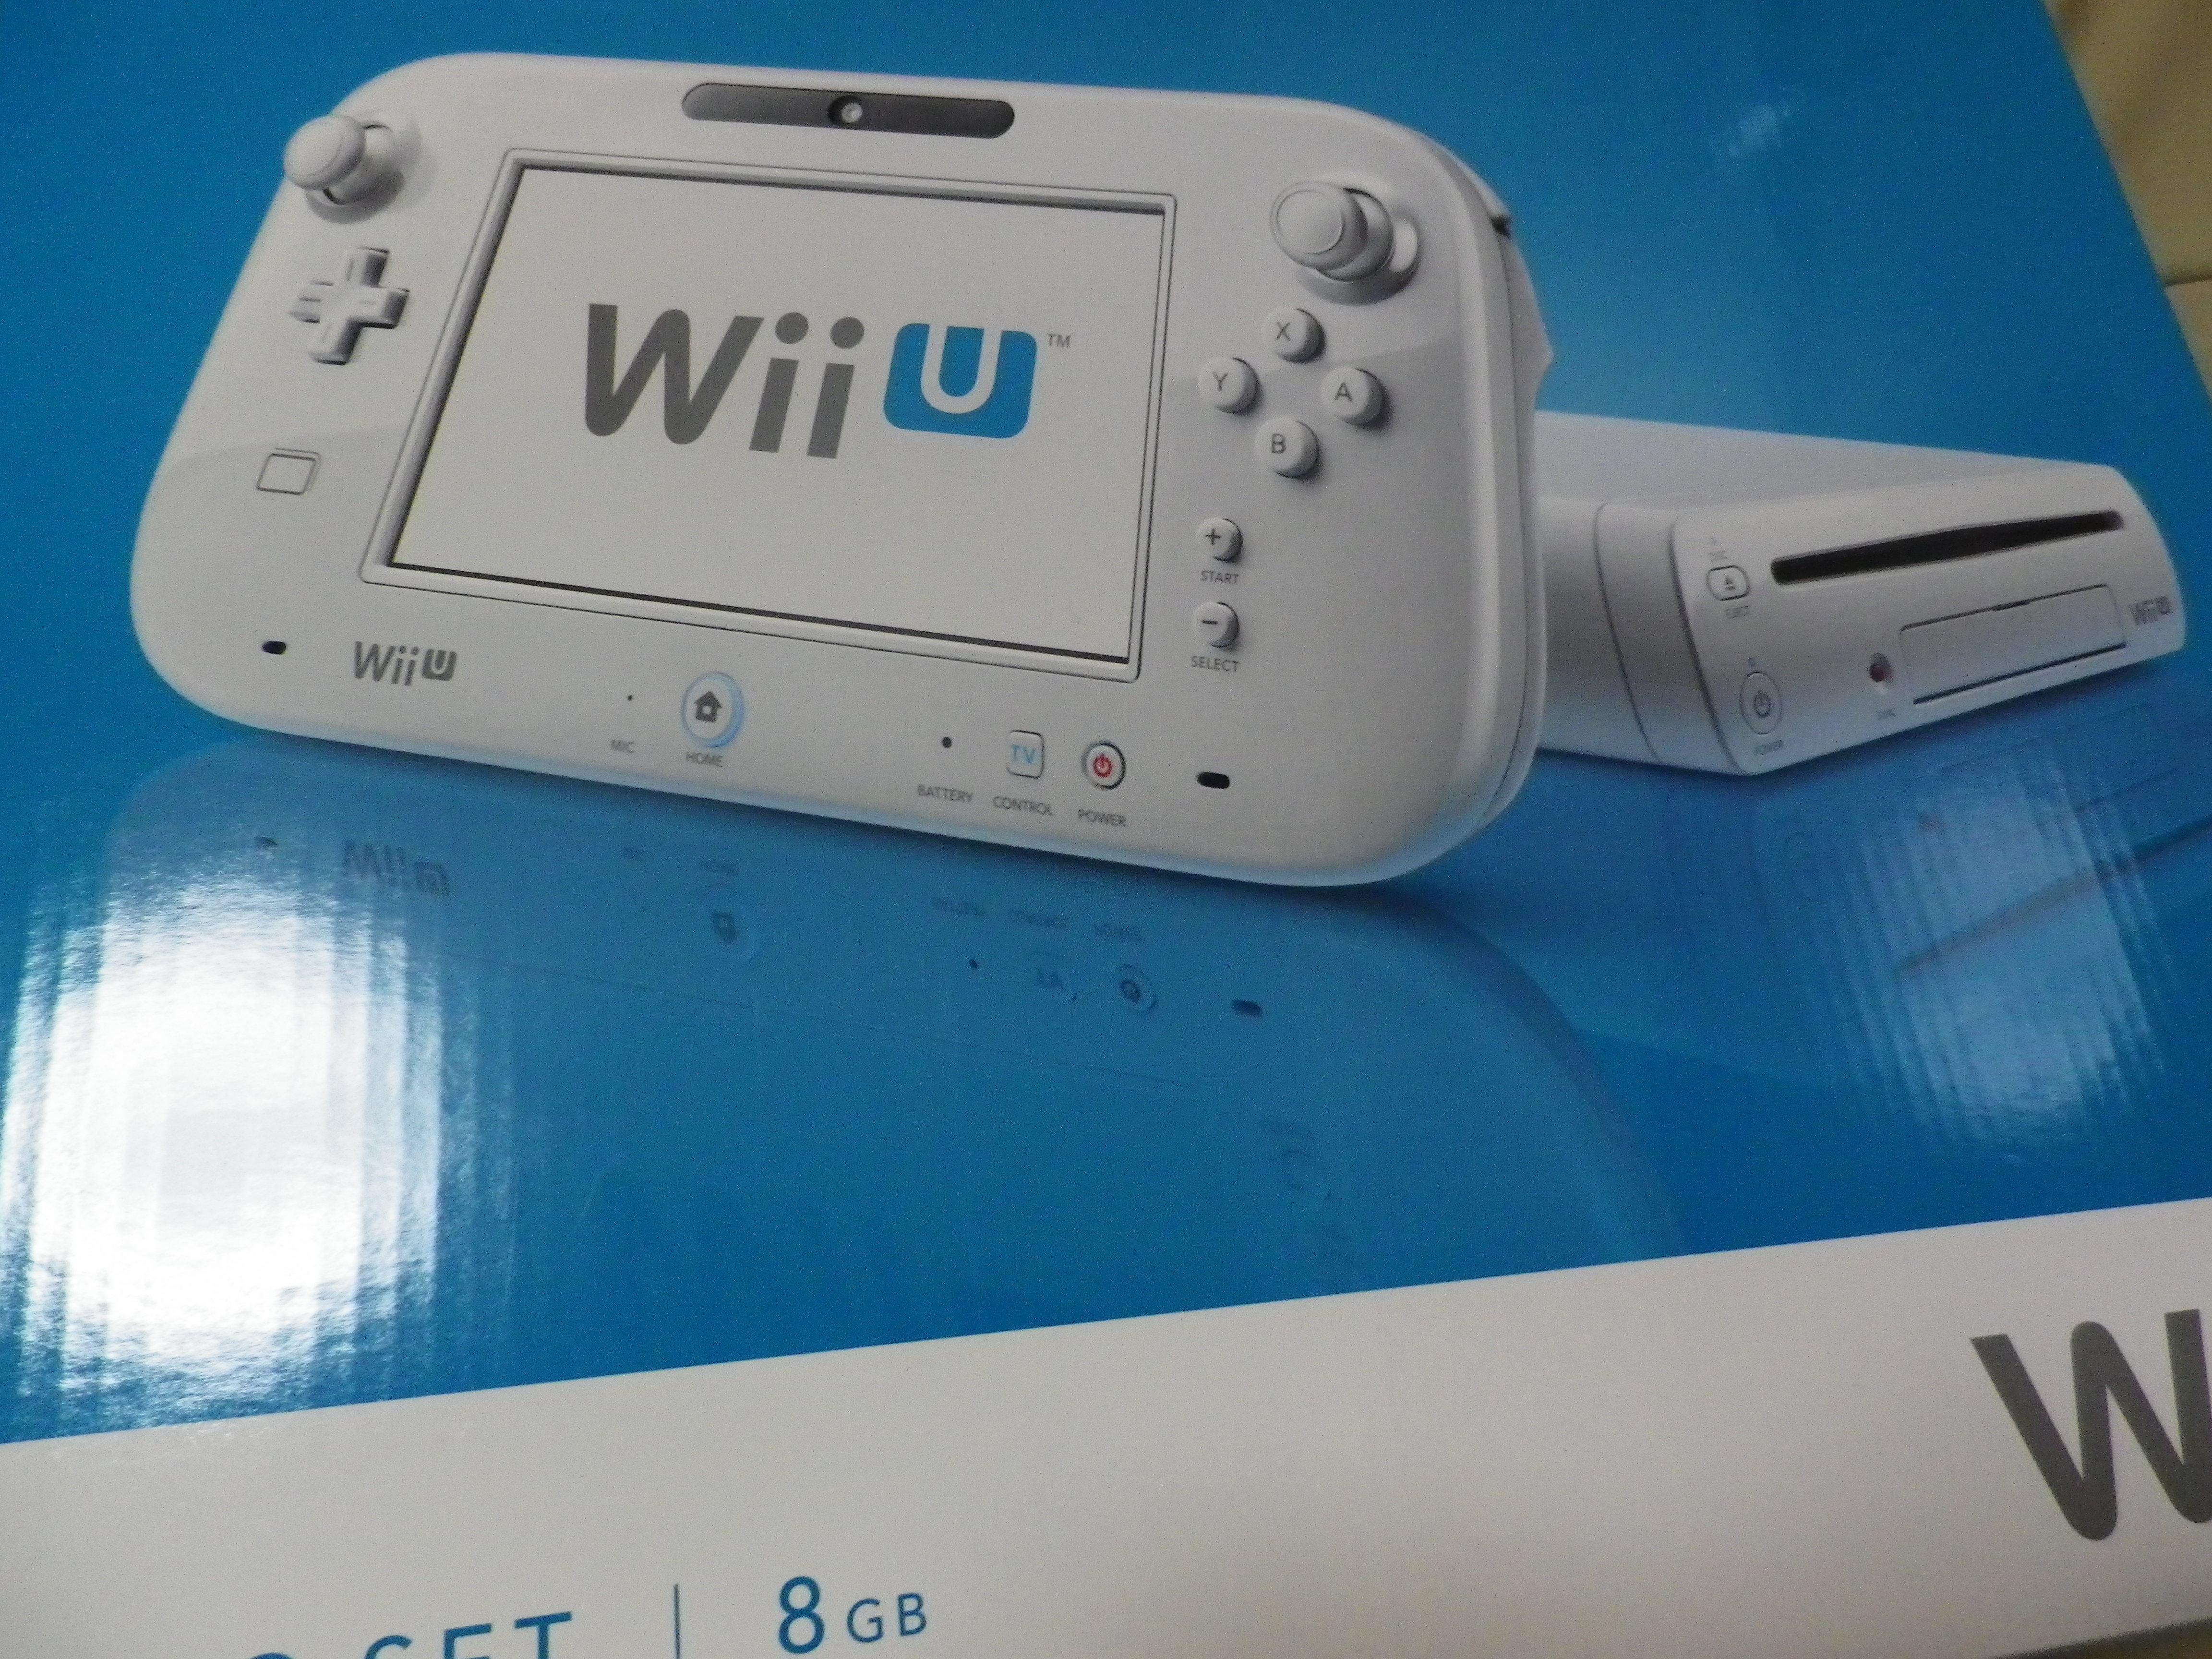 Wiiuゲームパッドとは Wii Uのレビュー ジグソー レビューメディア